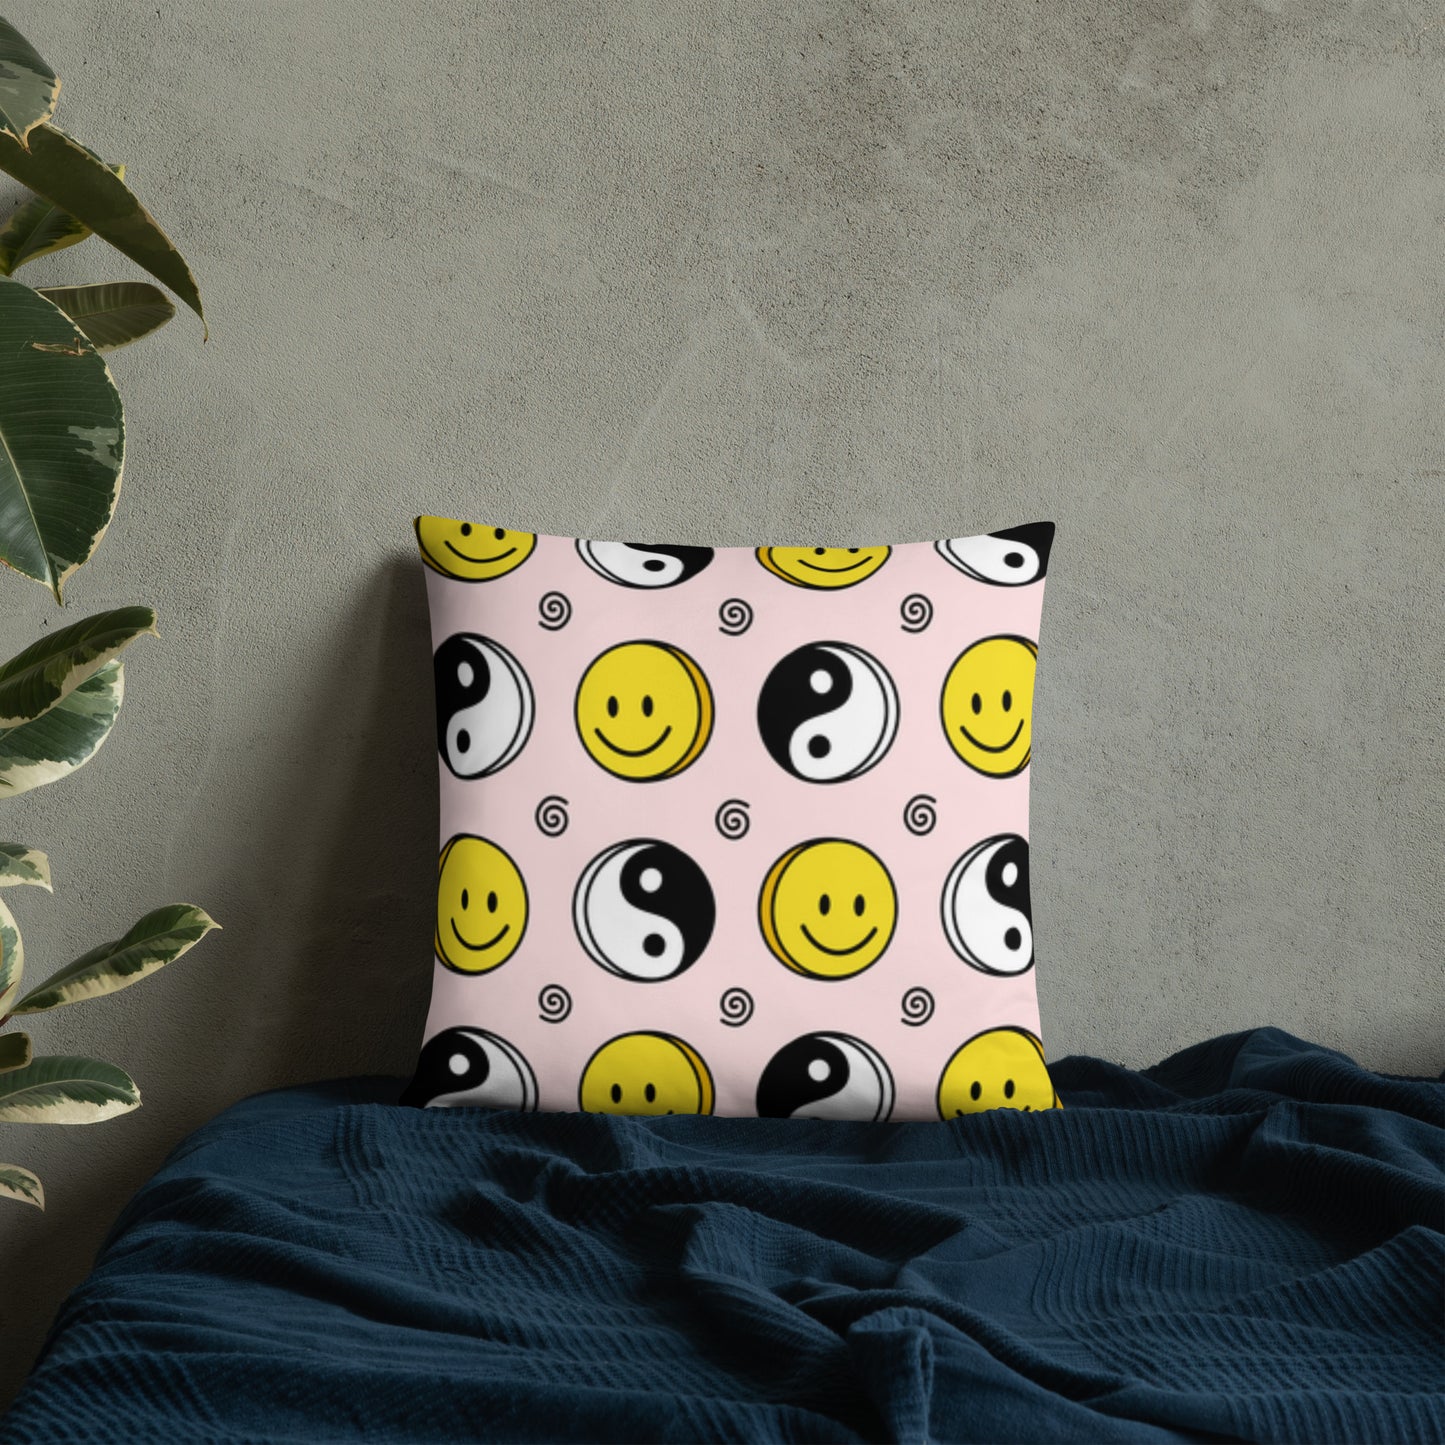 Basic Pillow (Best Basic Pillow Smiles Pattern - Model 0010)